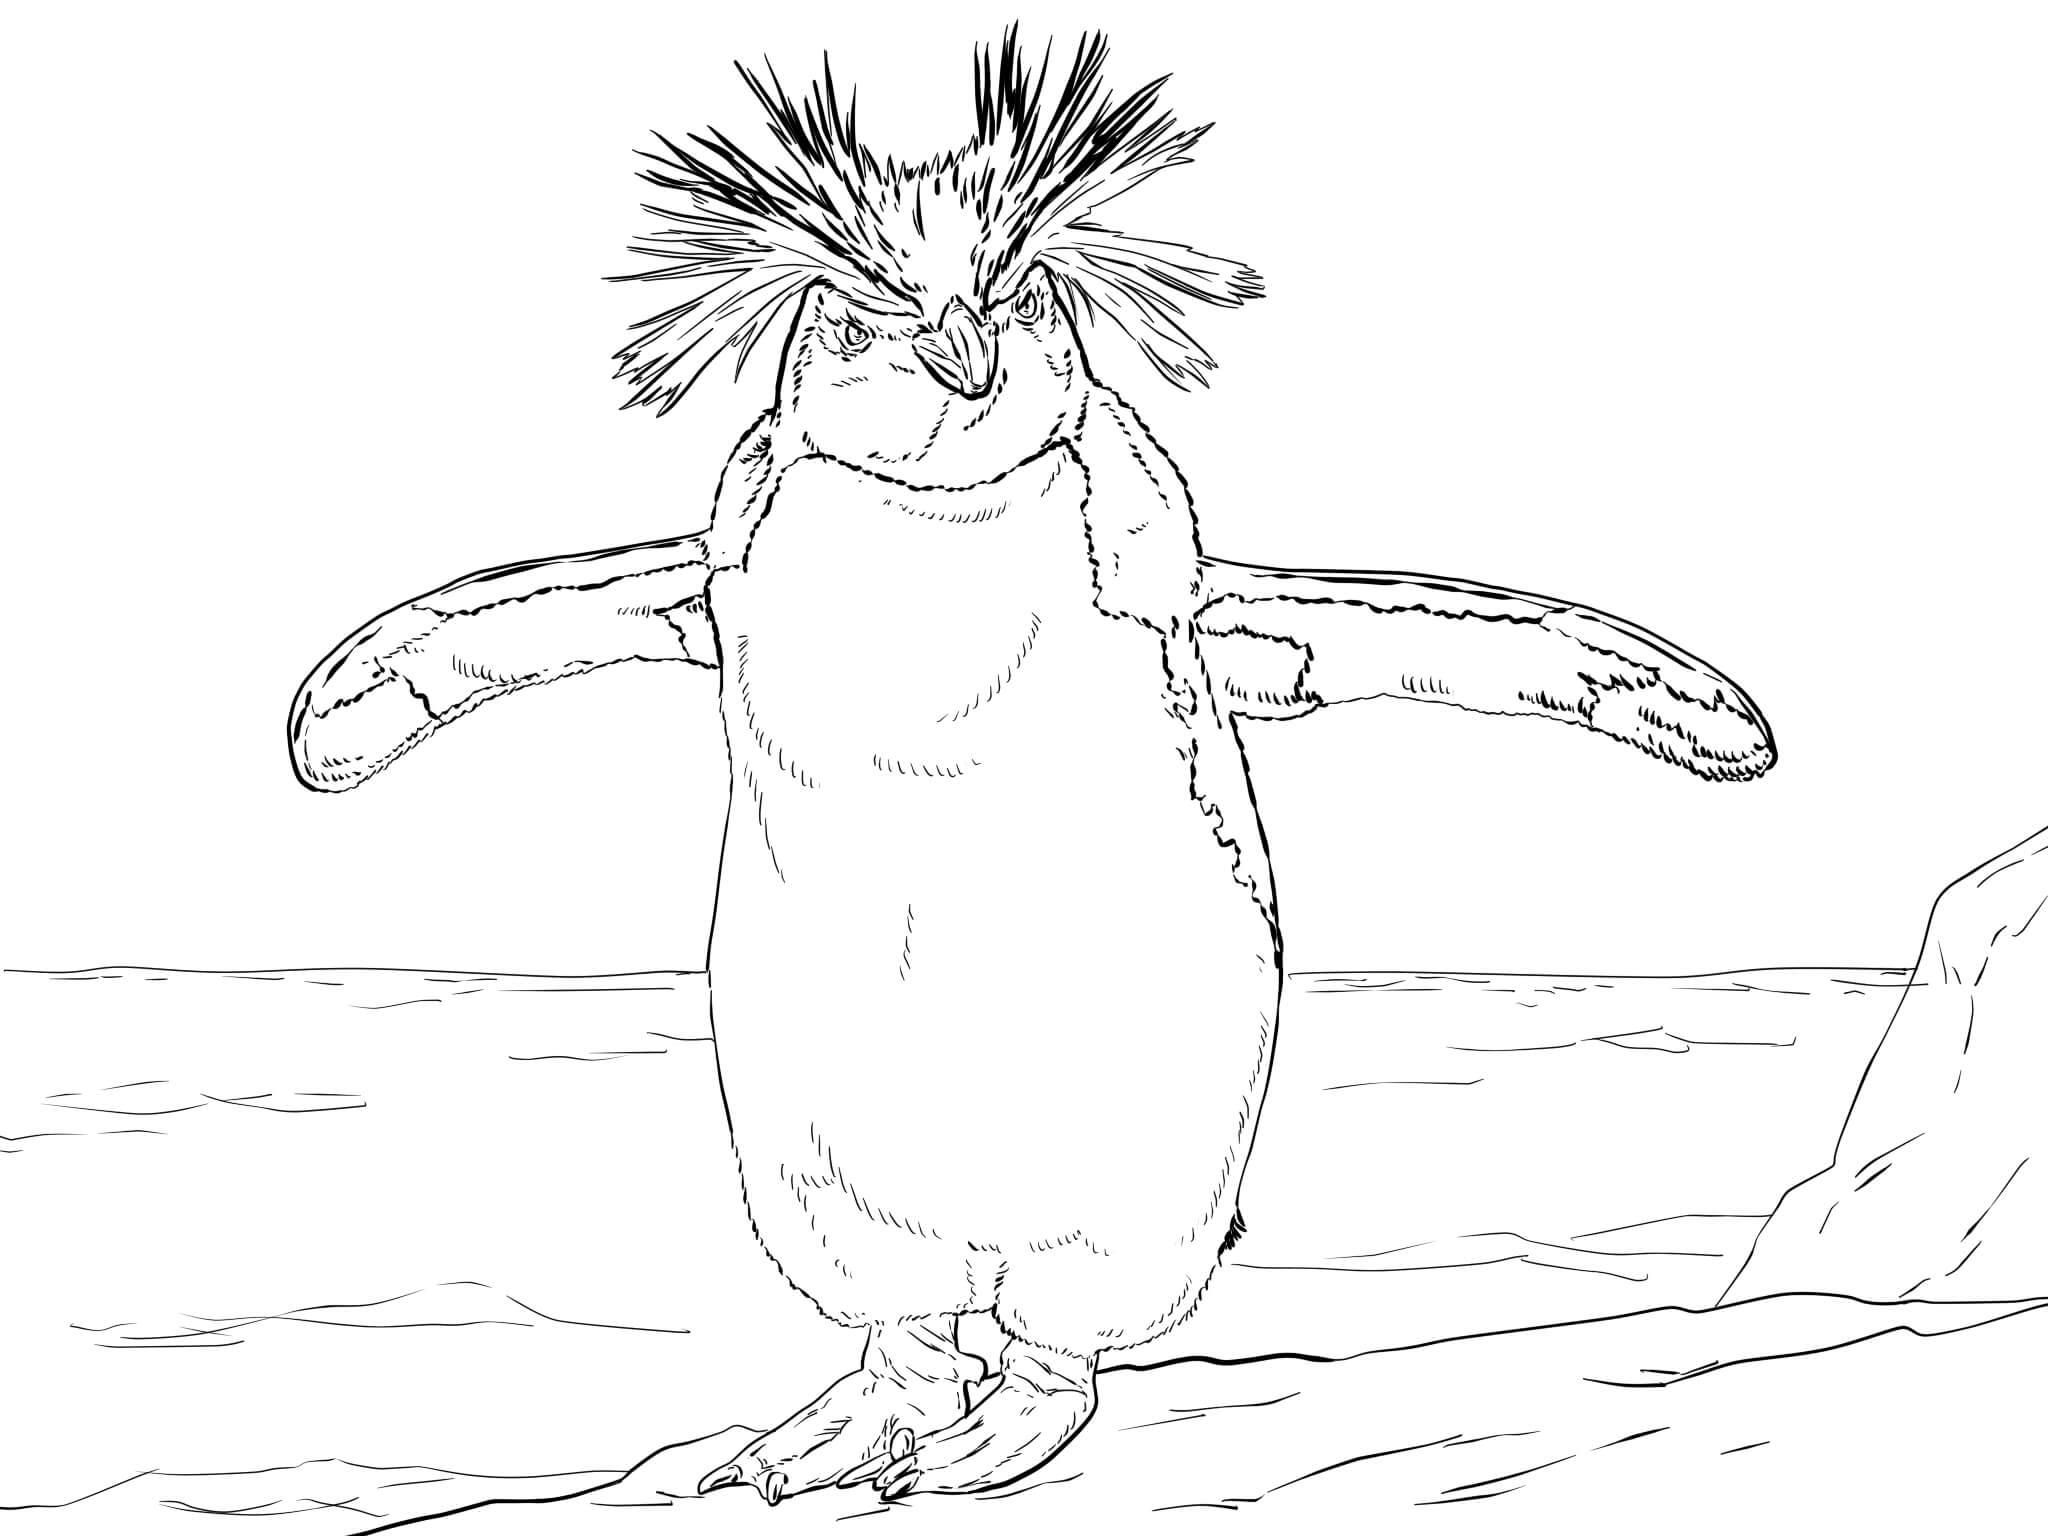   Северный пингвин с большим хохолком